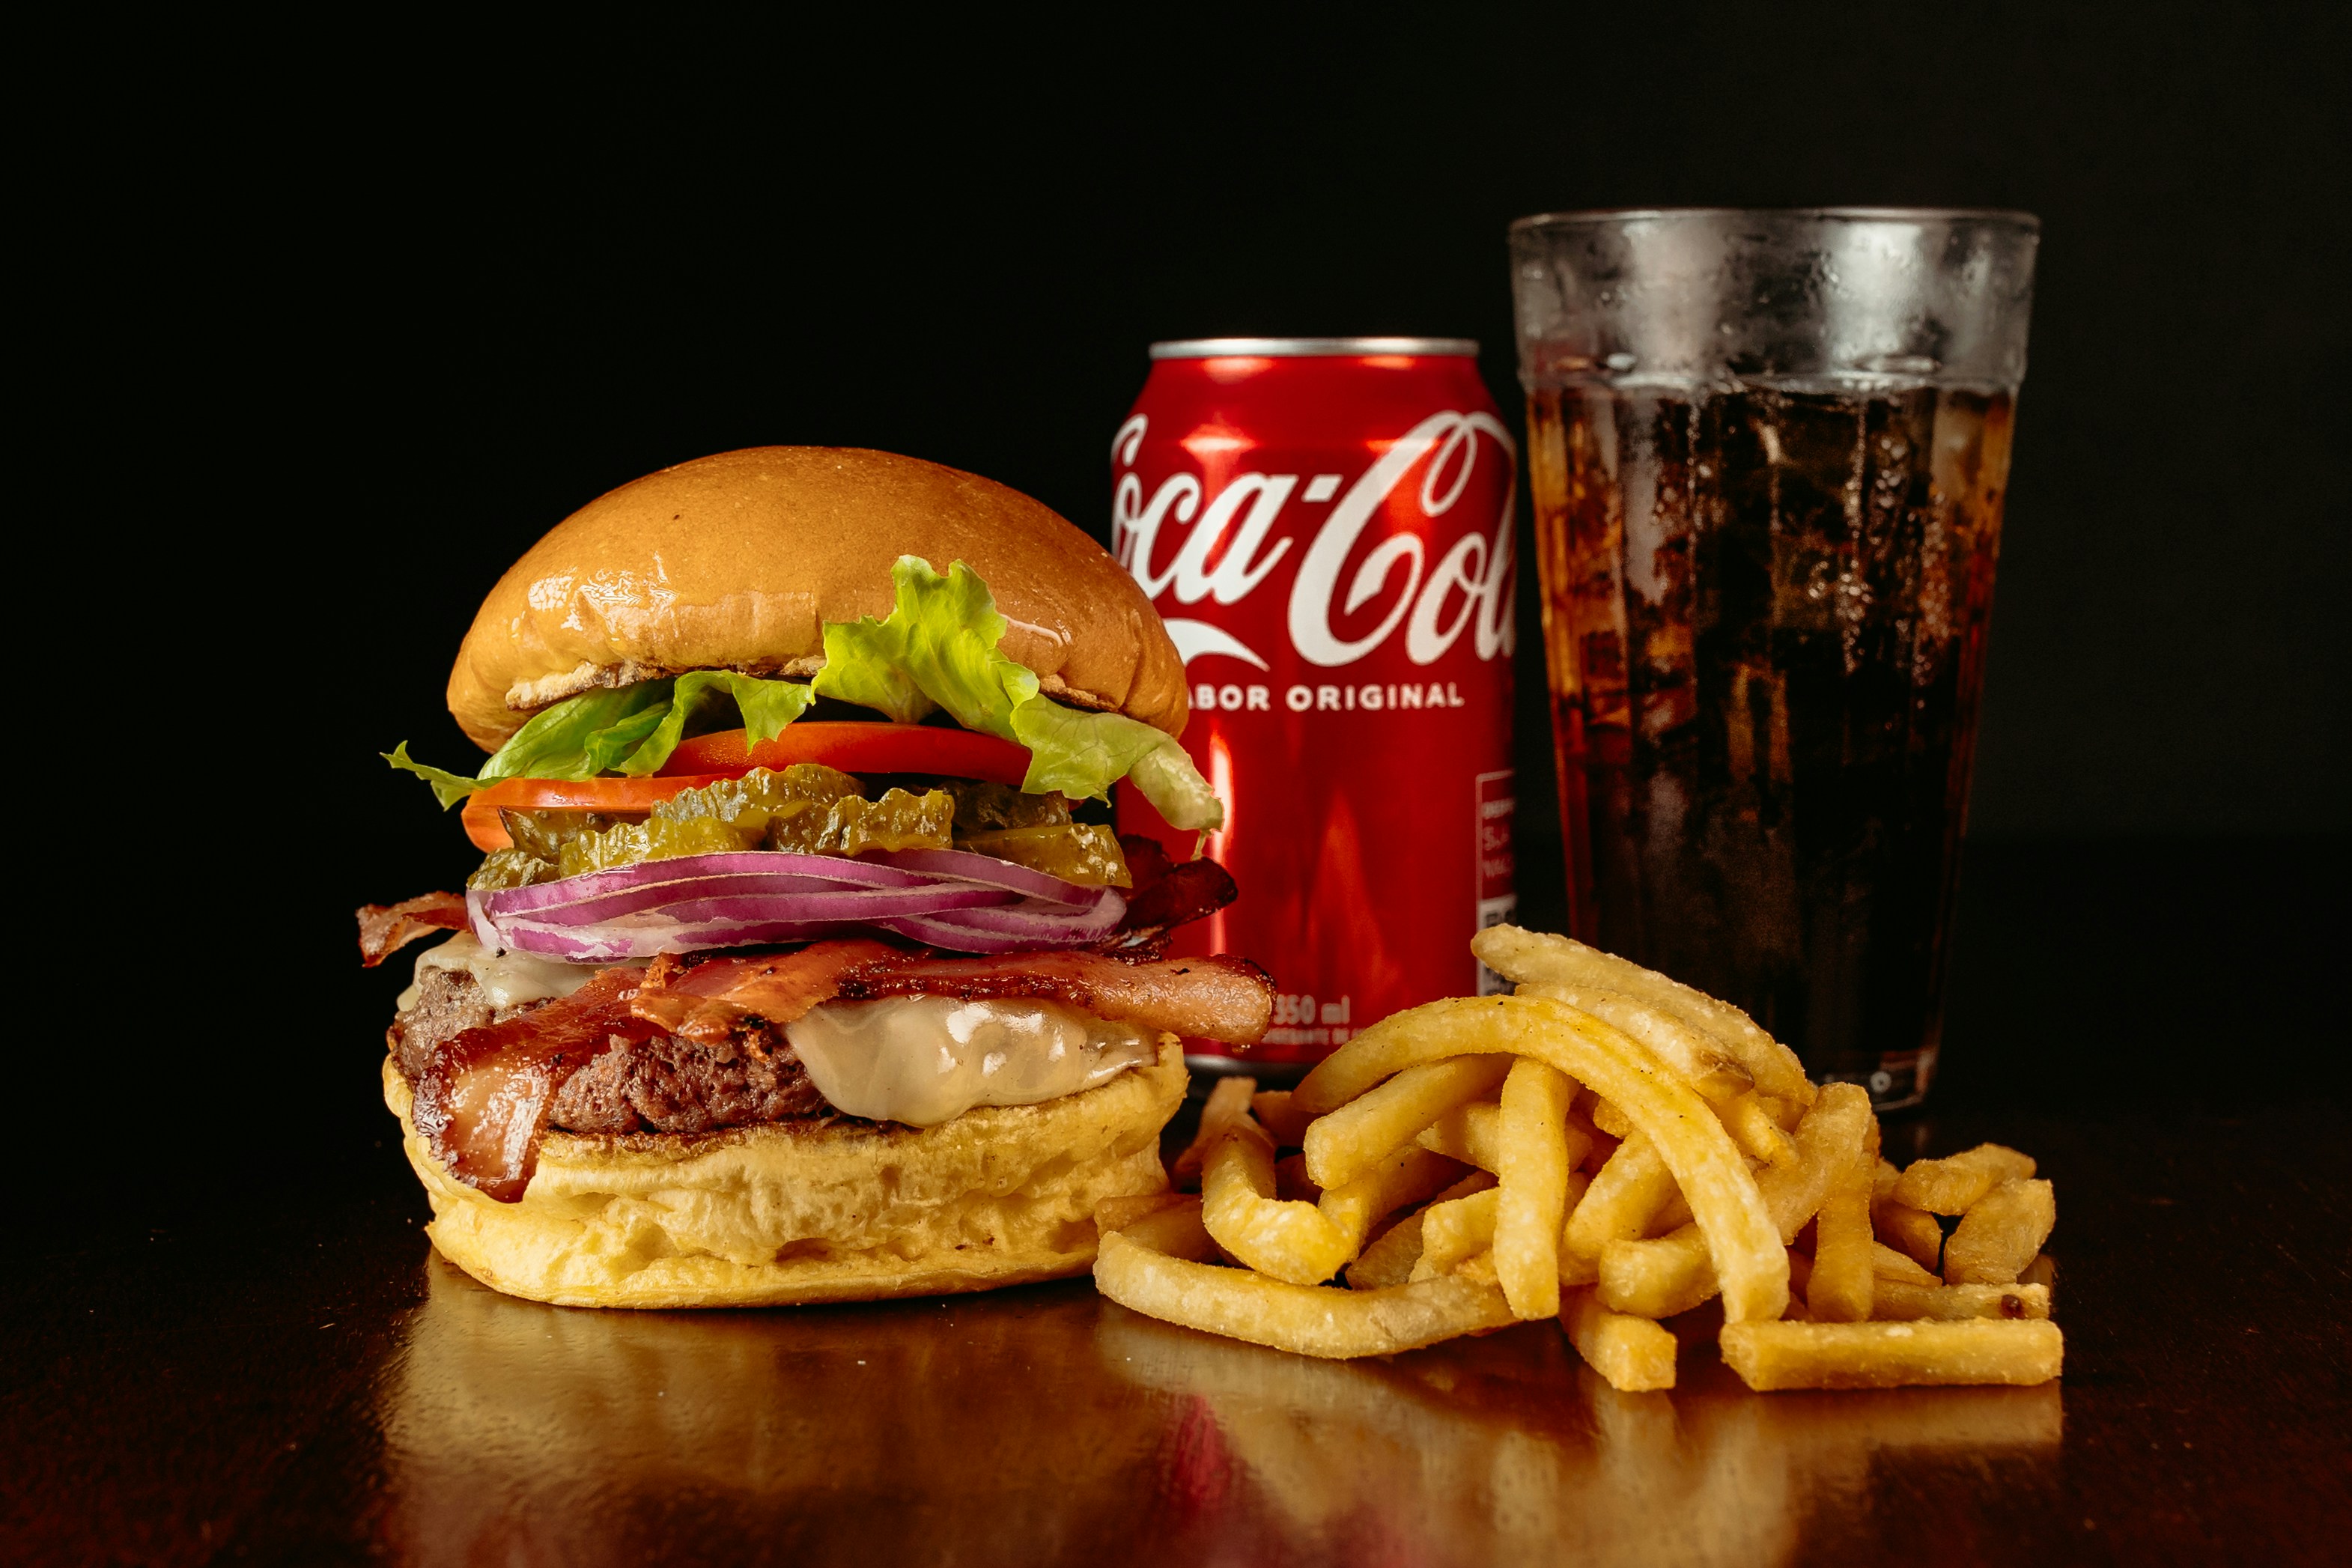 검은 바닥 위에 햄버거와 콜라 캔&#44; 콜라를 가득 따라 놓은 유리컵&#44; 그리고 그 앞에 감자튀김을 놓고 찍은 사진